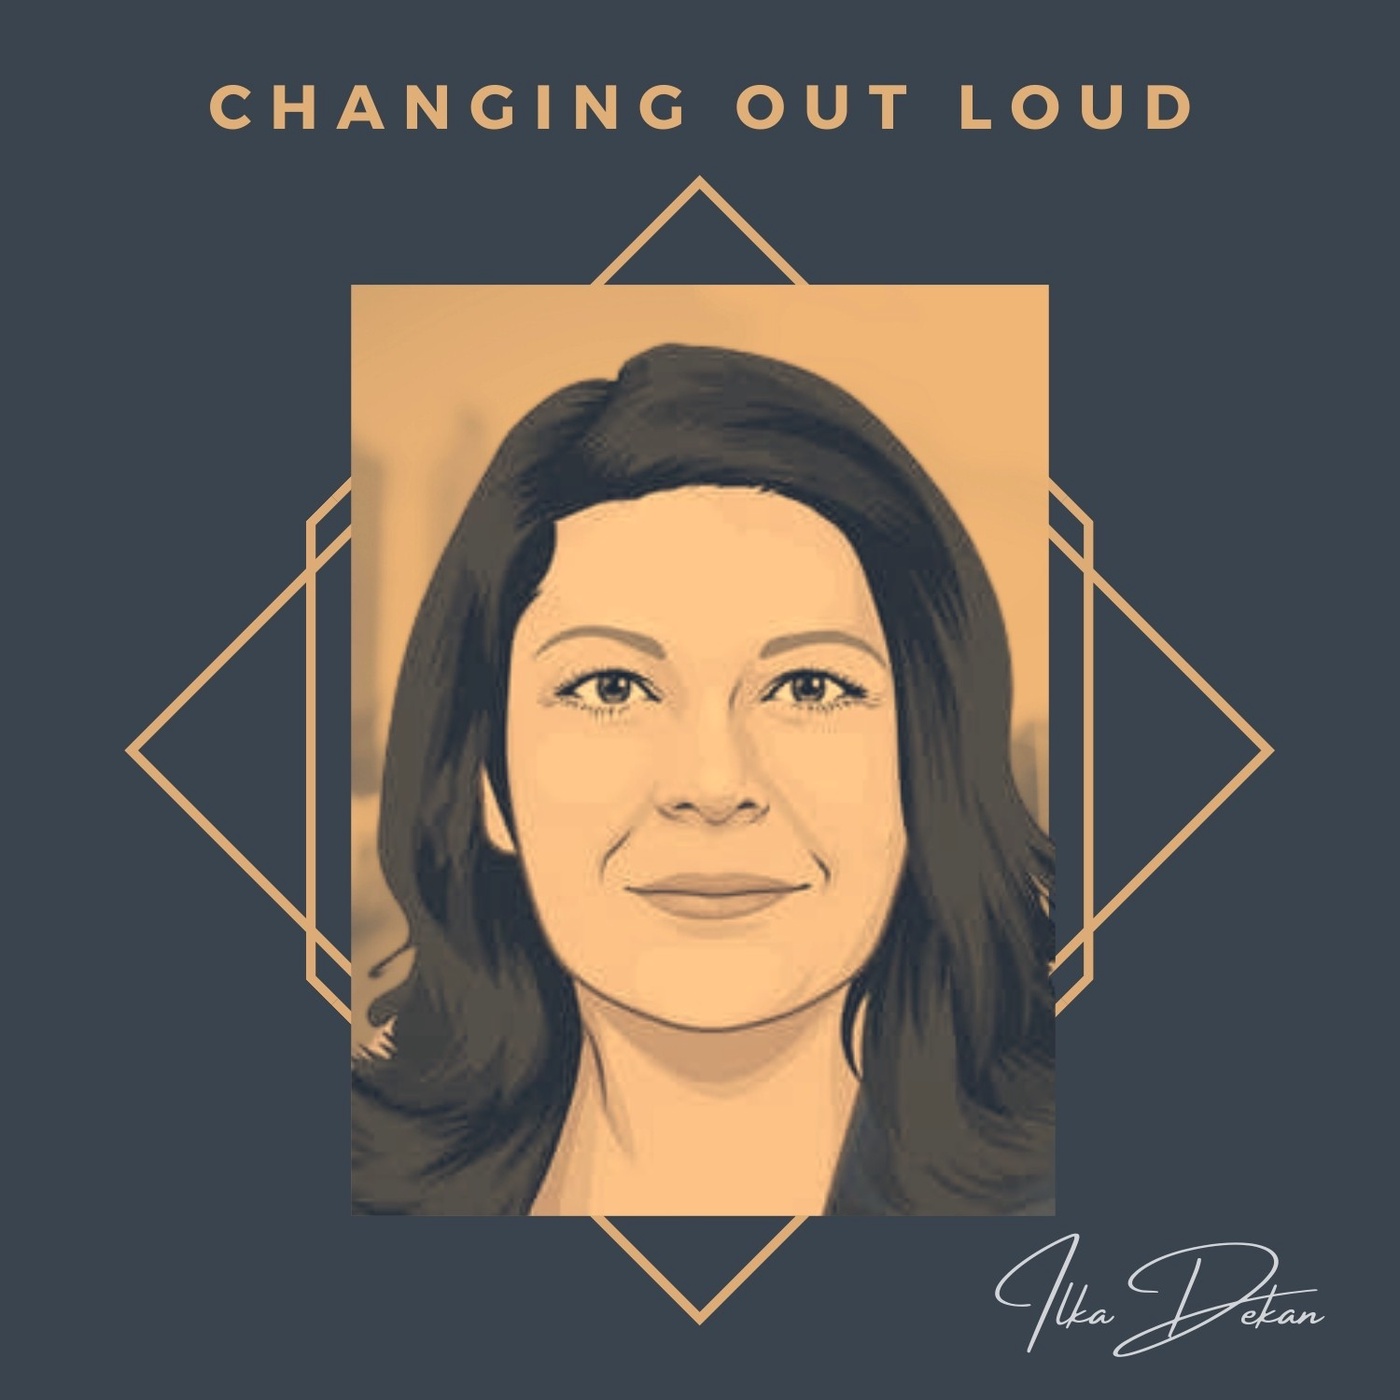 Changing out loud - Dein Praxispodcast rund um die Digitale Transformation